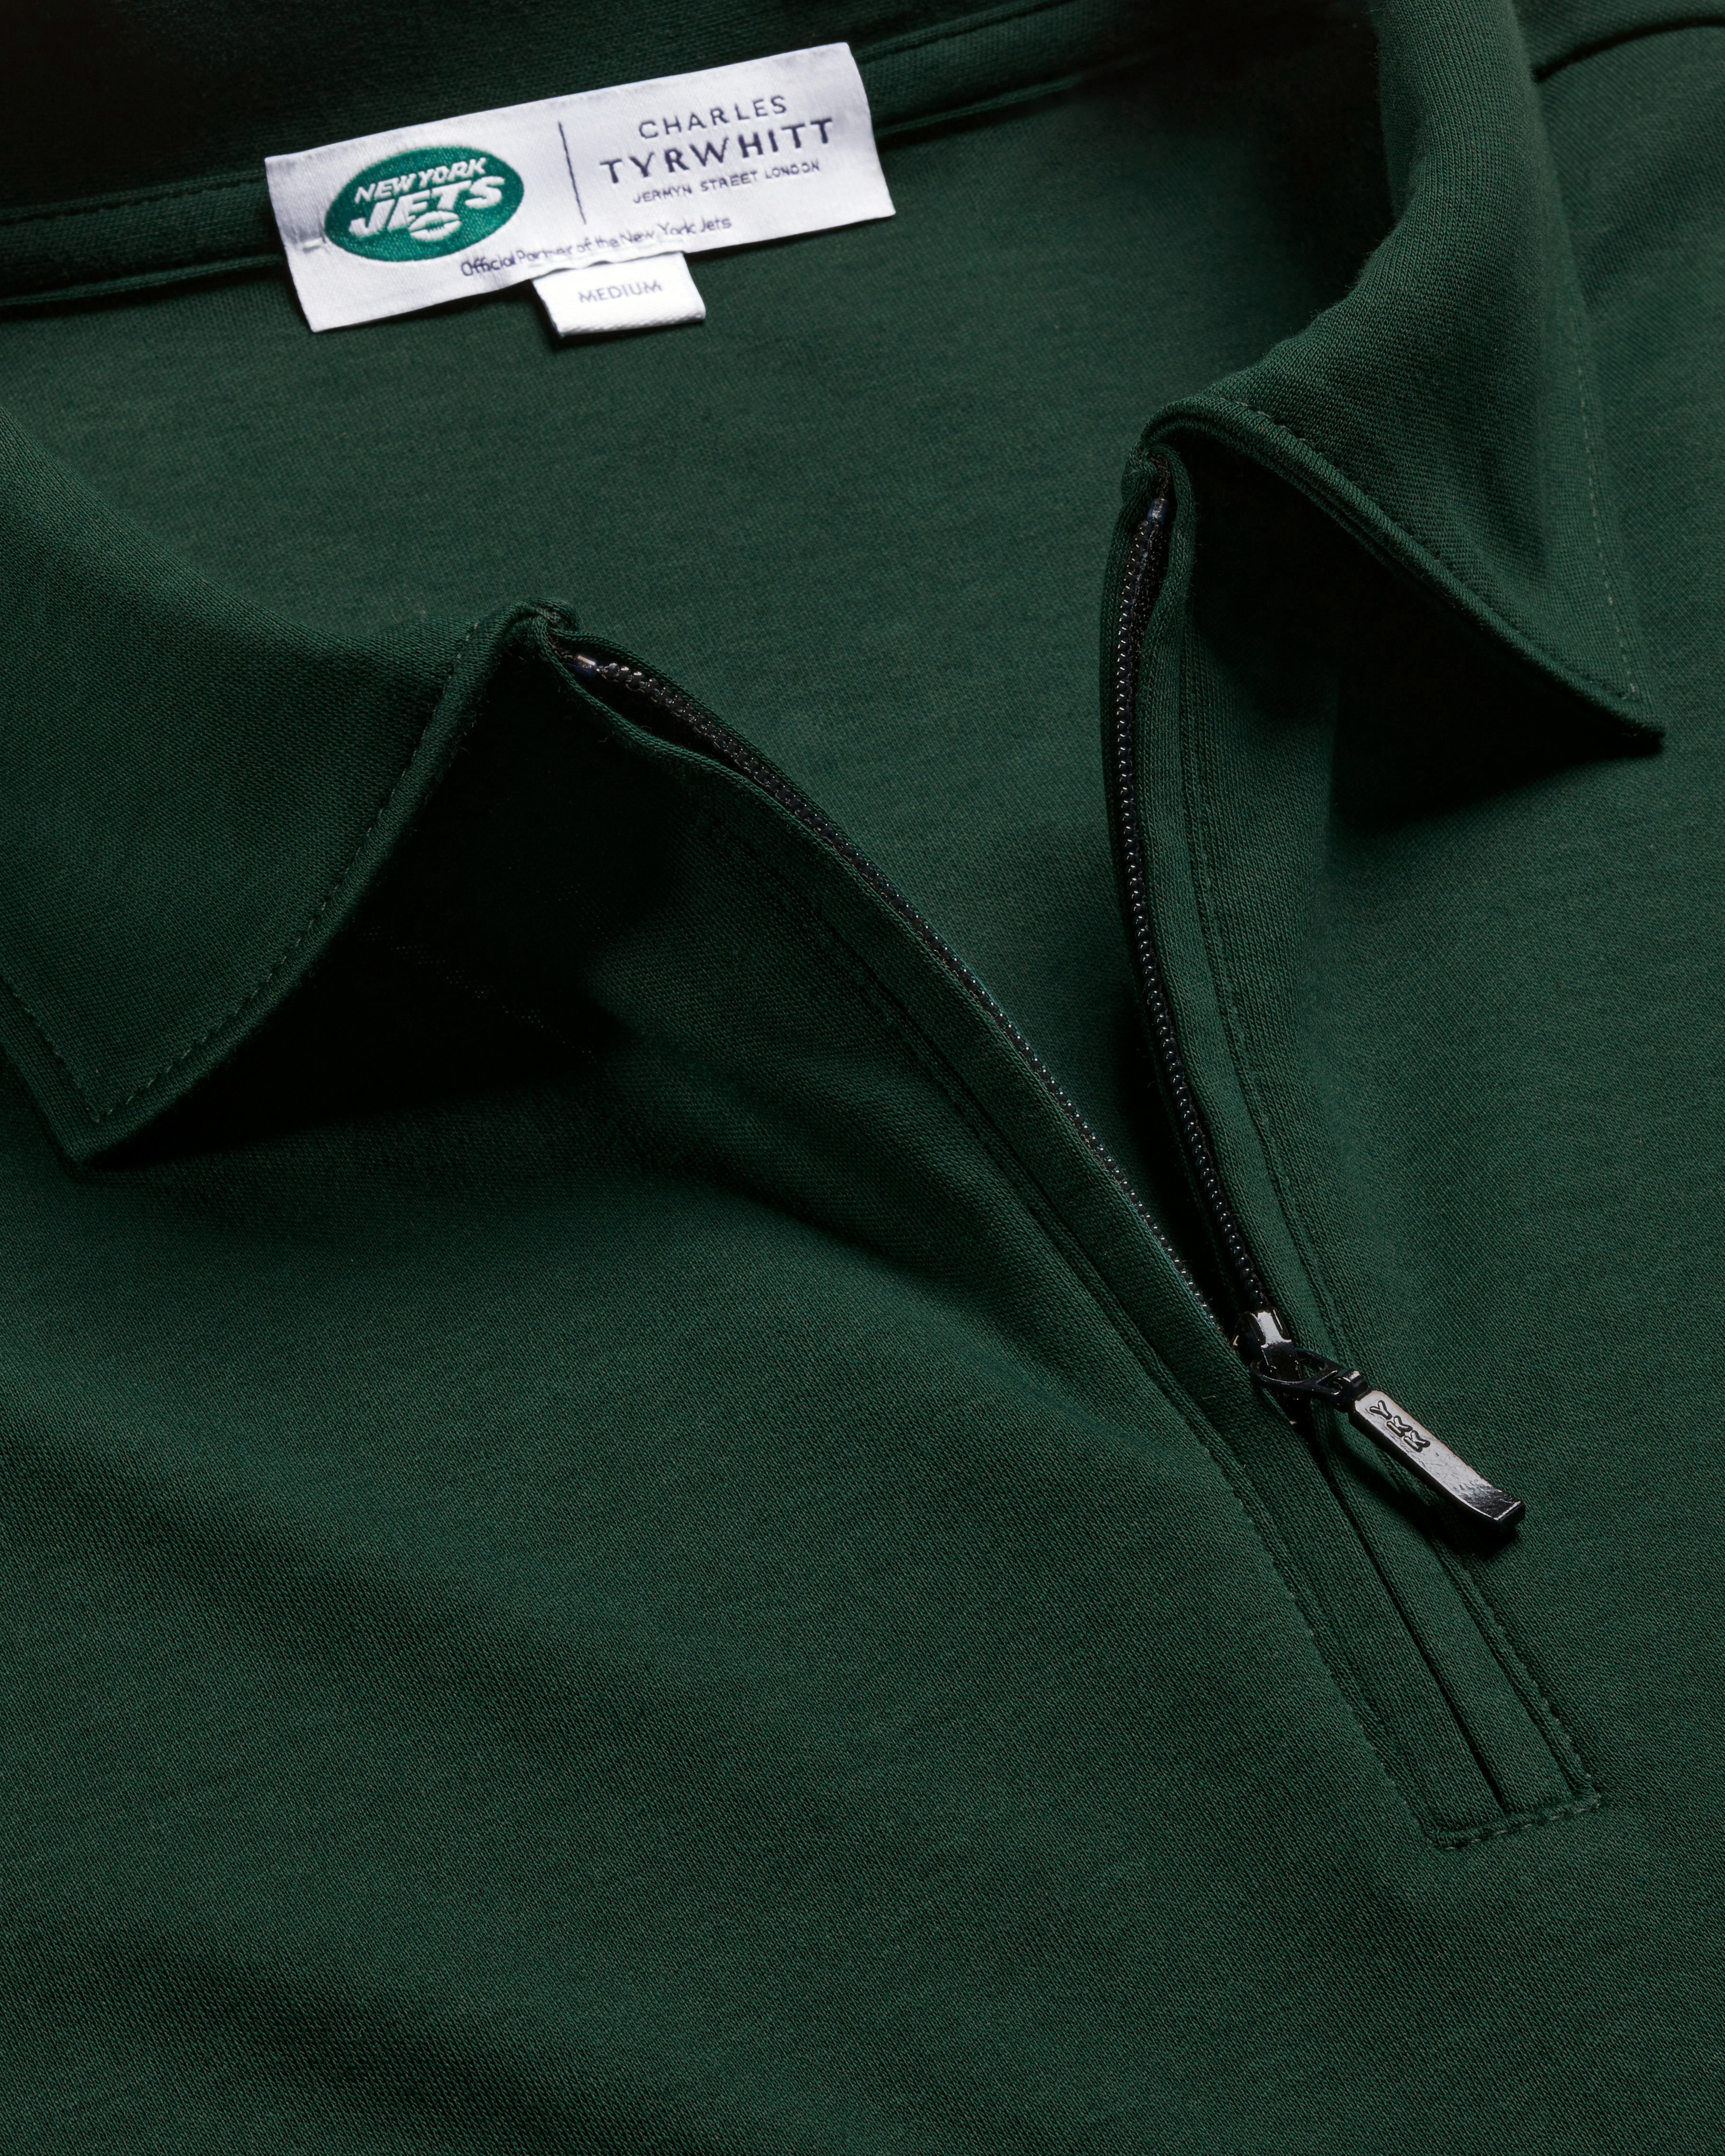 Charles Tyrwhitt Men's  New York Jets Jersey Polo Shirt In Green